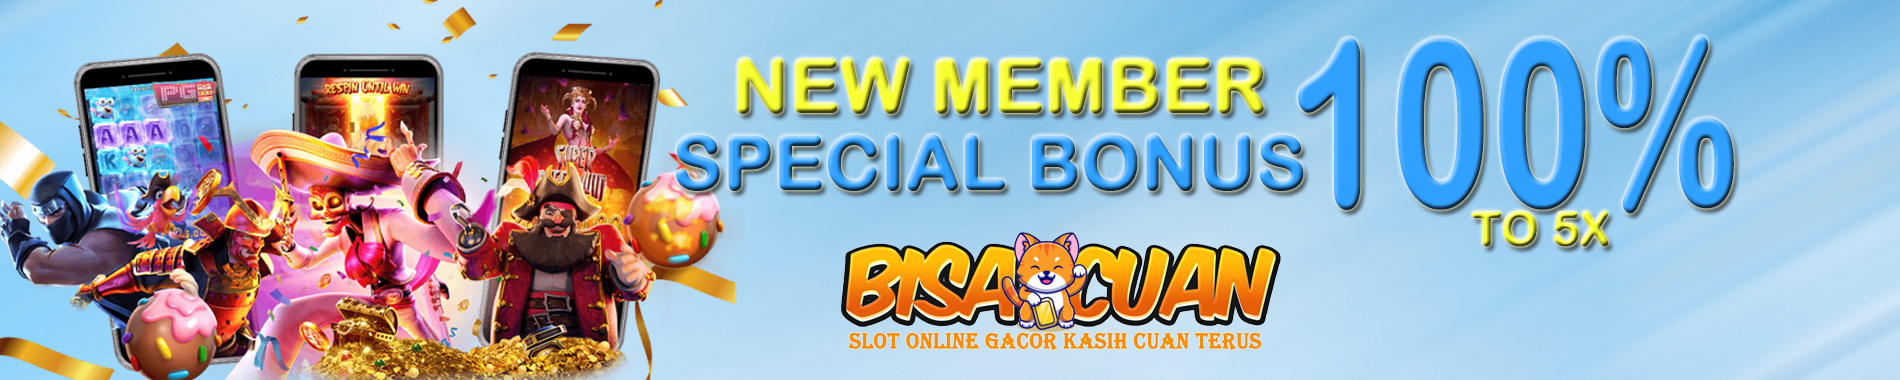 Bisacuan New Member Special Bonus